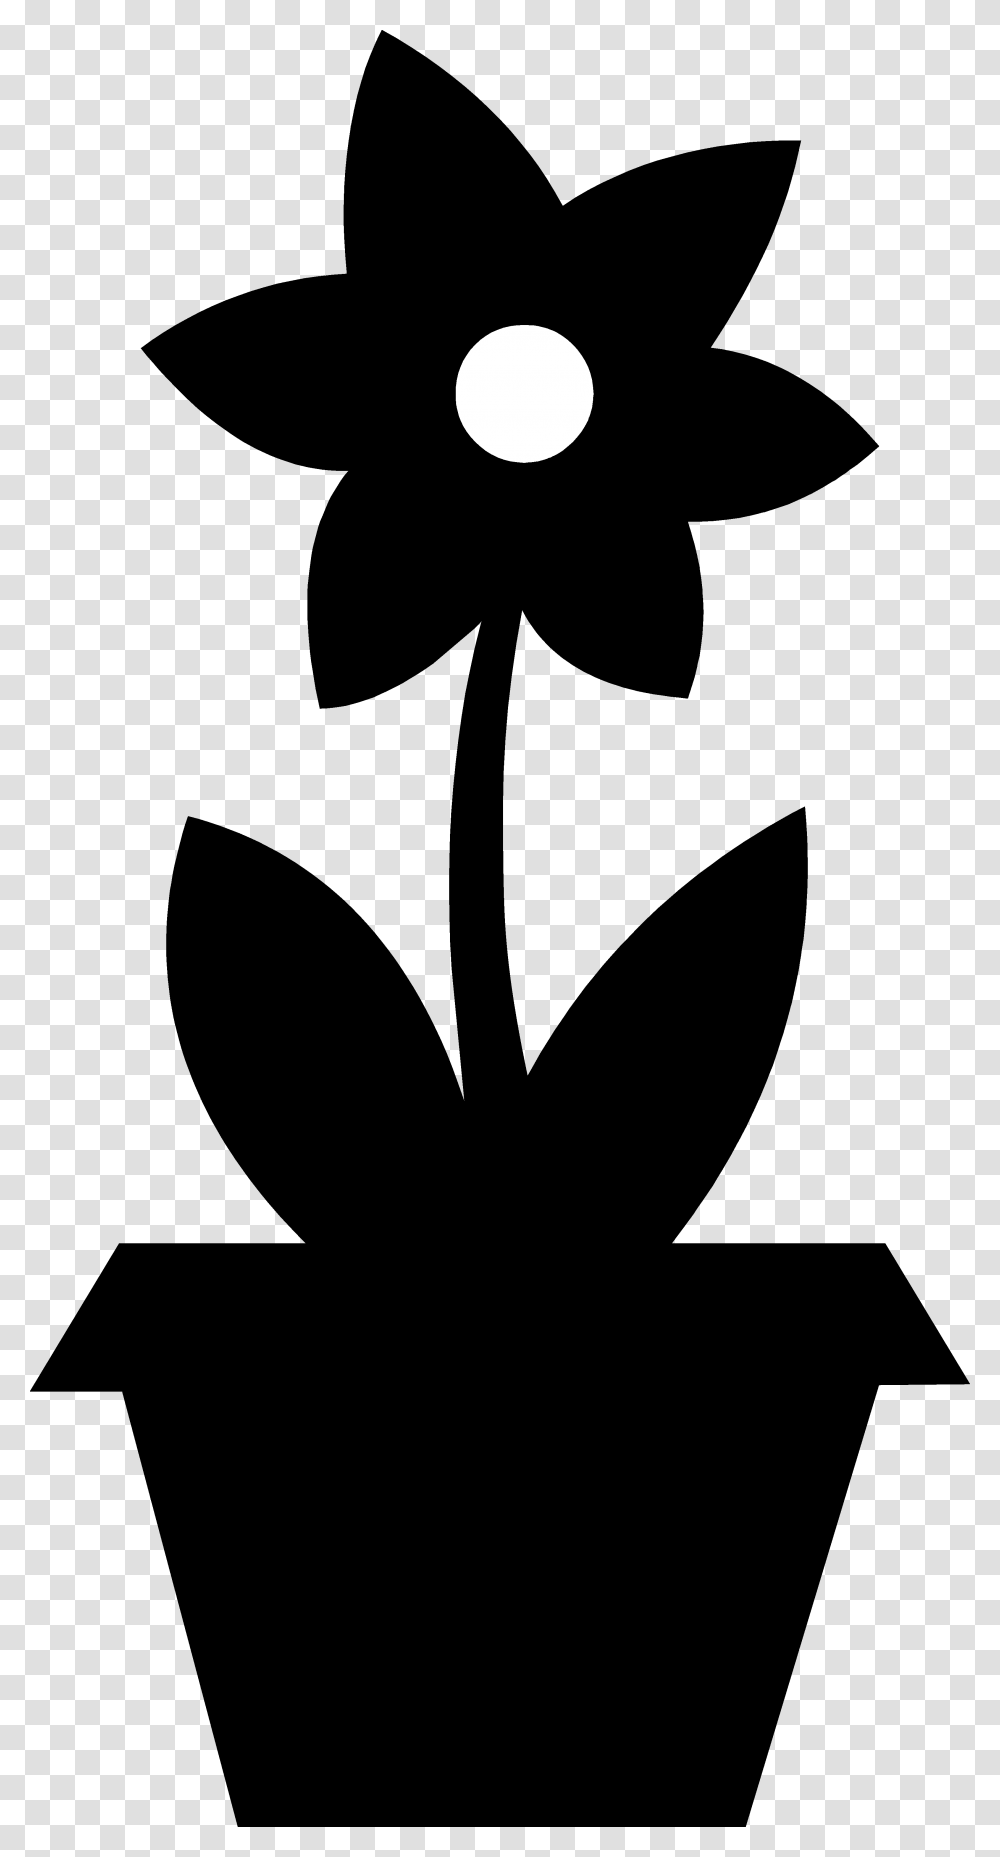 Clipart Download Cute Flower Pot Silhouette Free Clip Flower In Pot Silhouette, Stencil, Cross, Plant Transparent Png